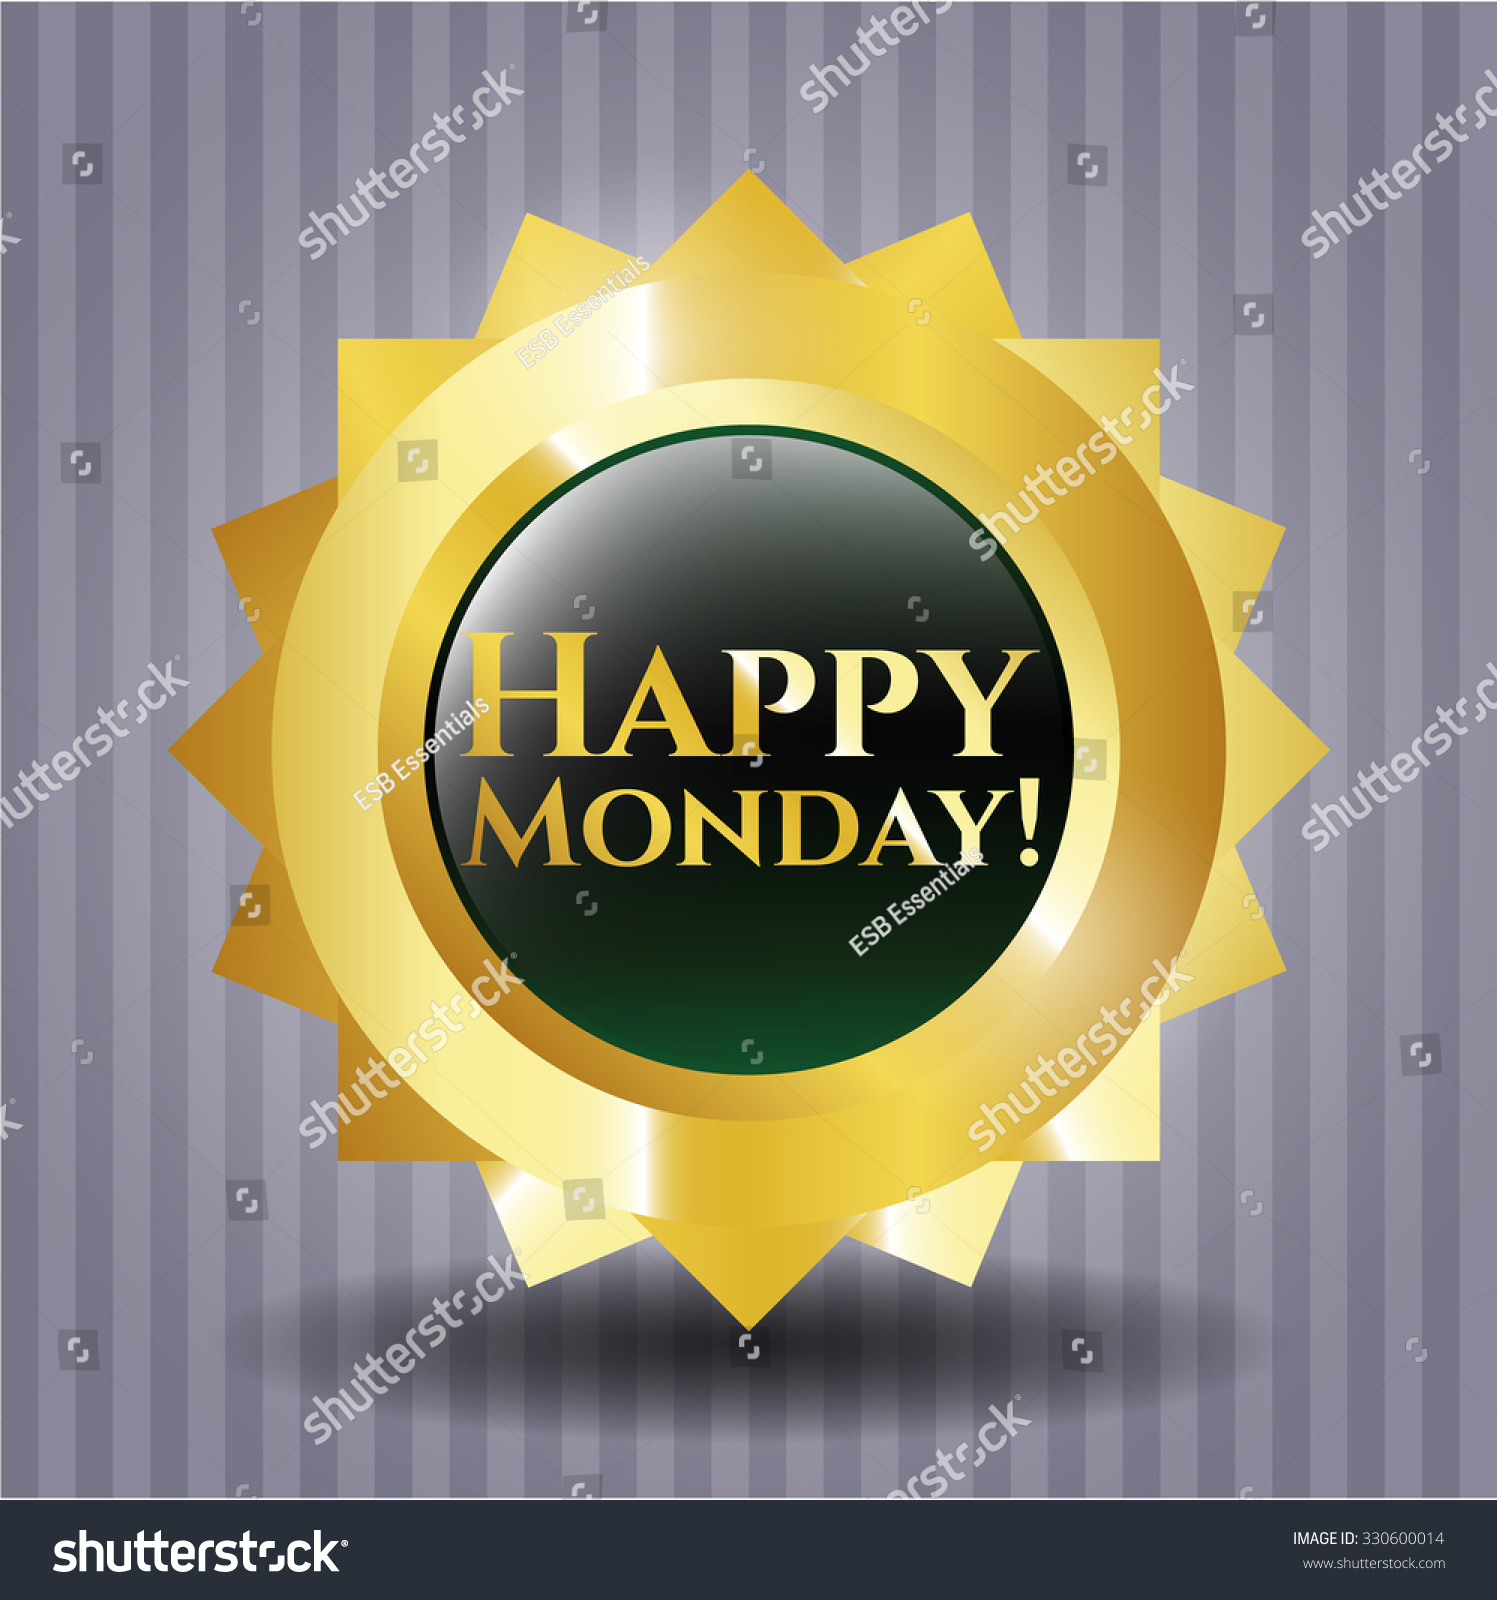 Happy Monday! shiny badge - Royalty Free Stock Vector 330600014 ...